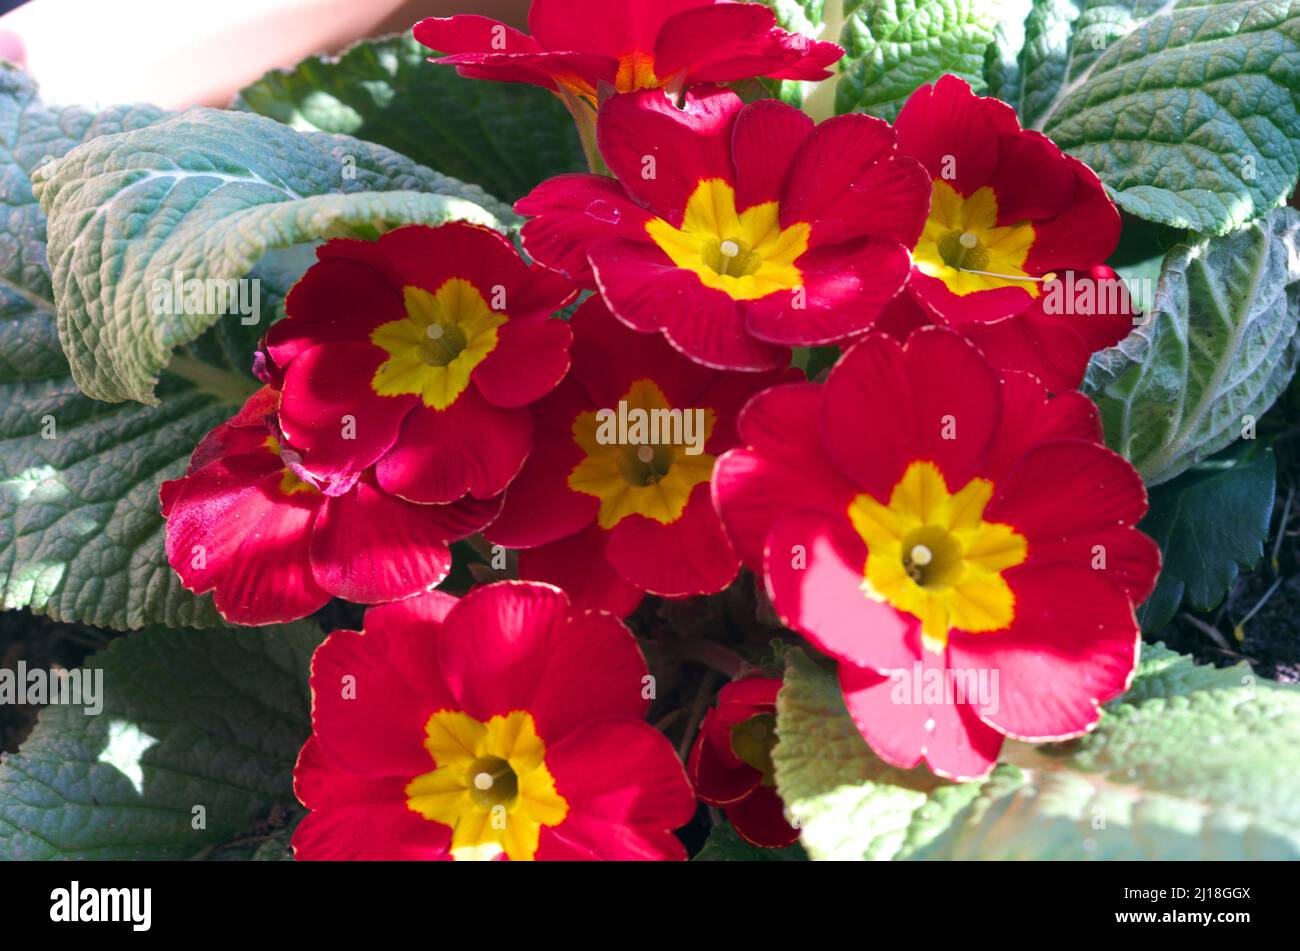 Primroses, lat. Primula, family: Primulaceae Order: Ericales, heathers Stock Photo